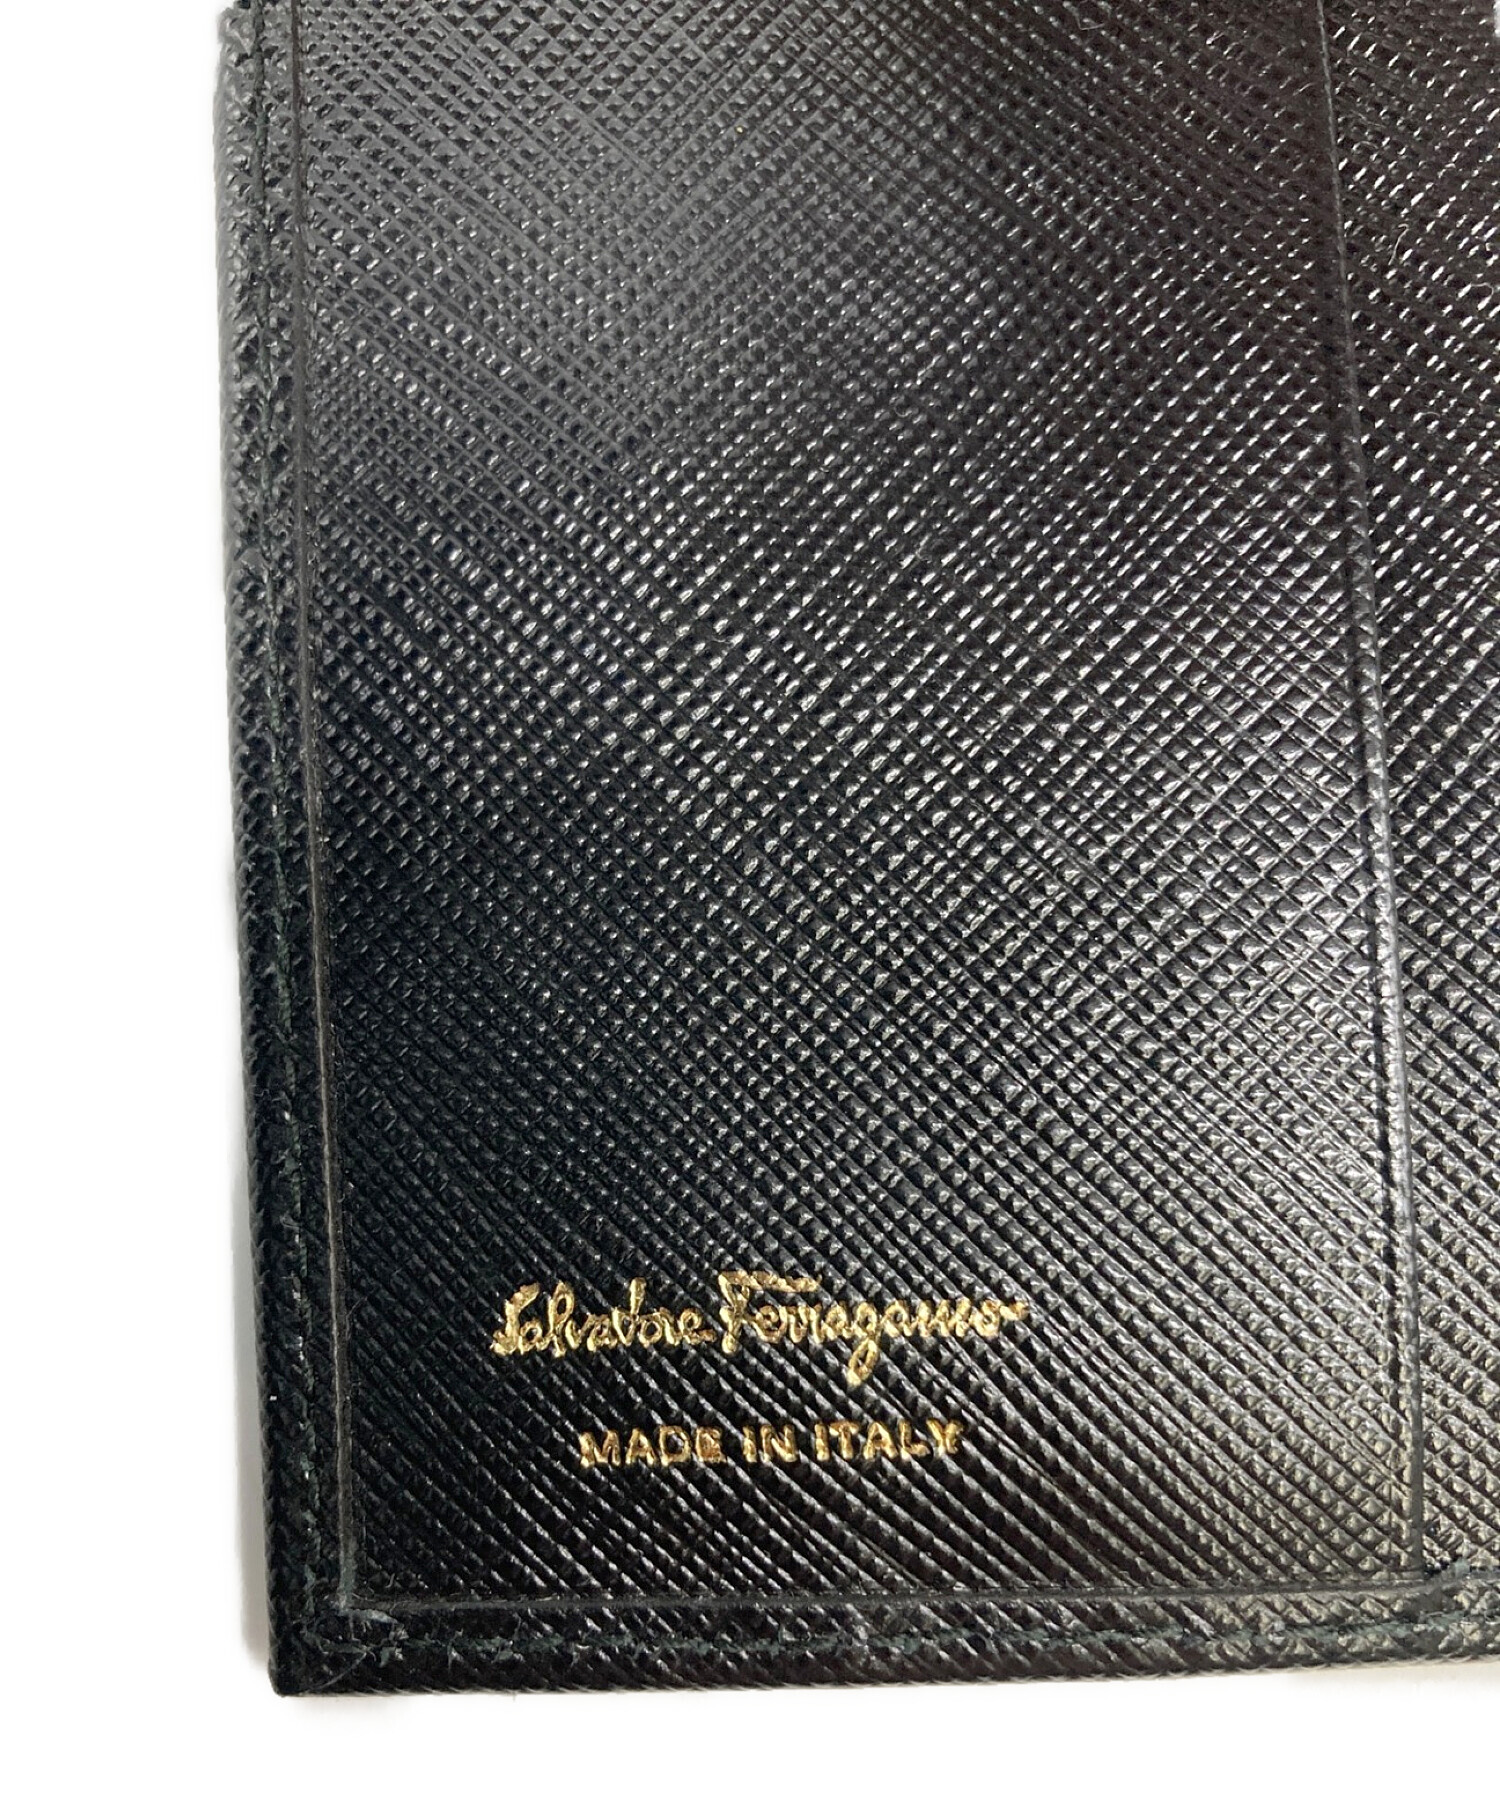 Salvatore Ferragamo (サルヴァトーレ フェラガモ) ヴァラリボンクリップ2つ折り財布 ブラック